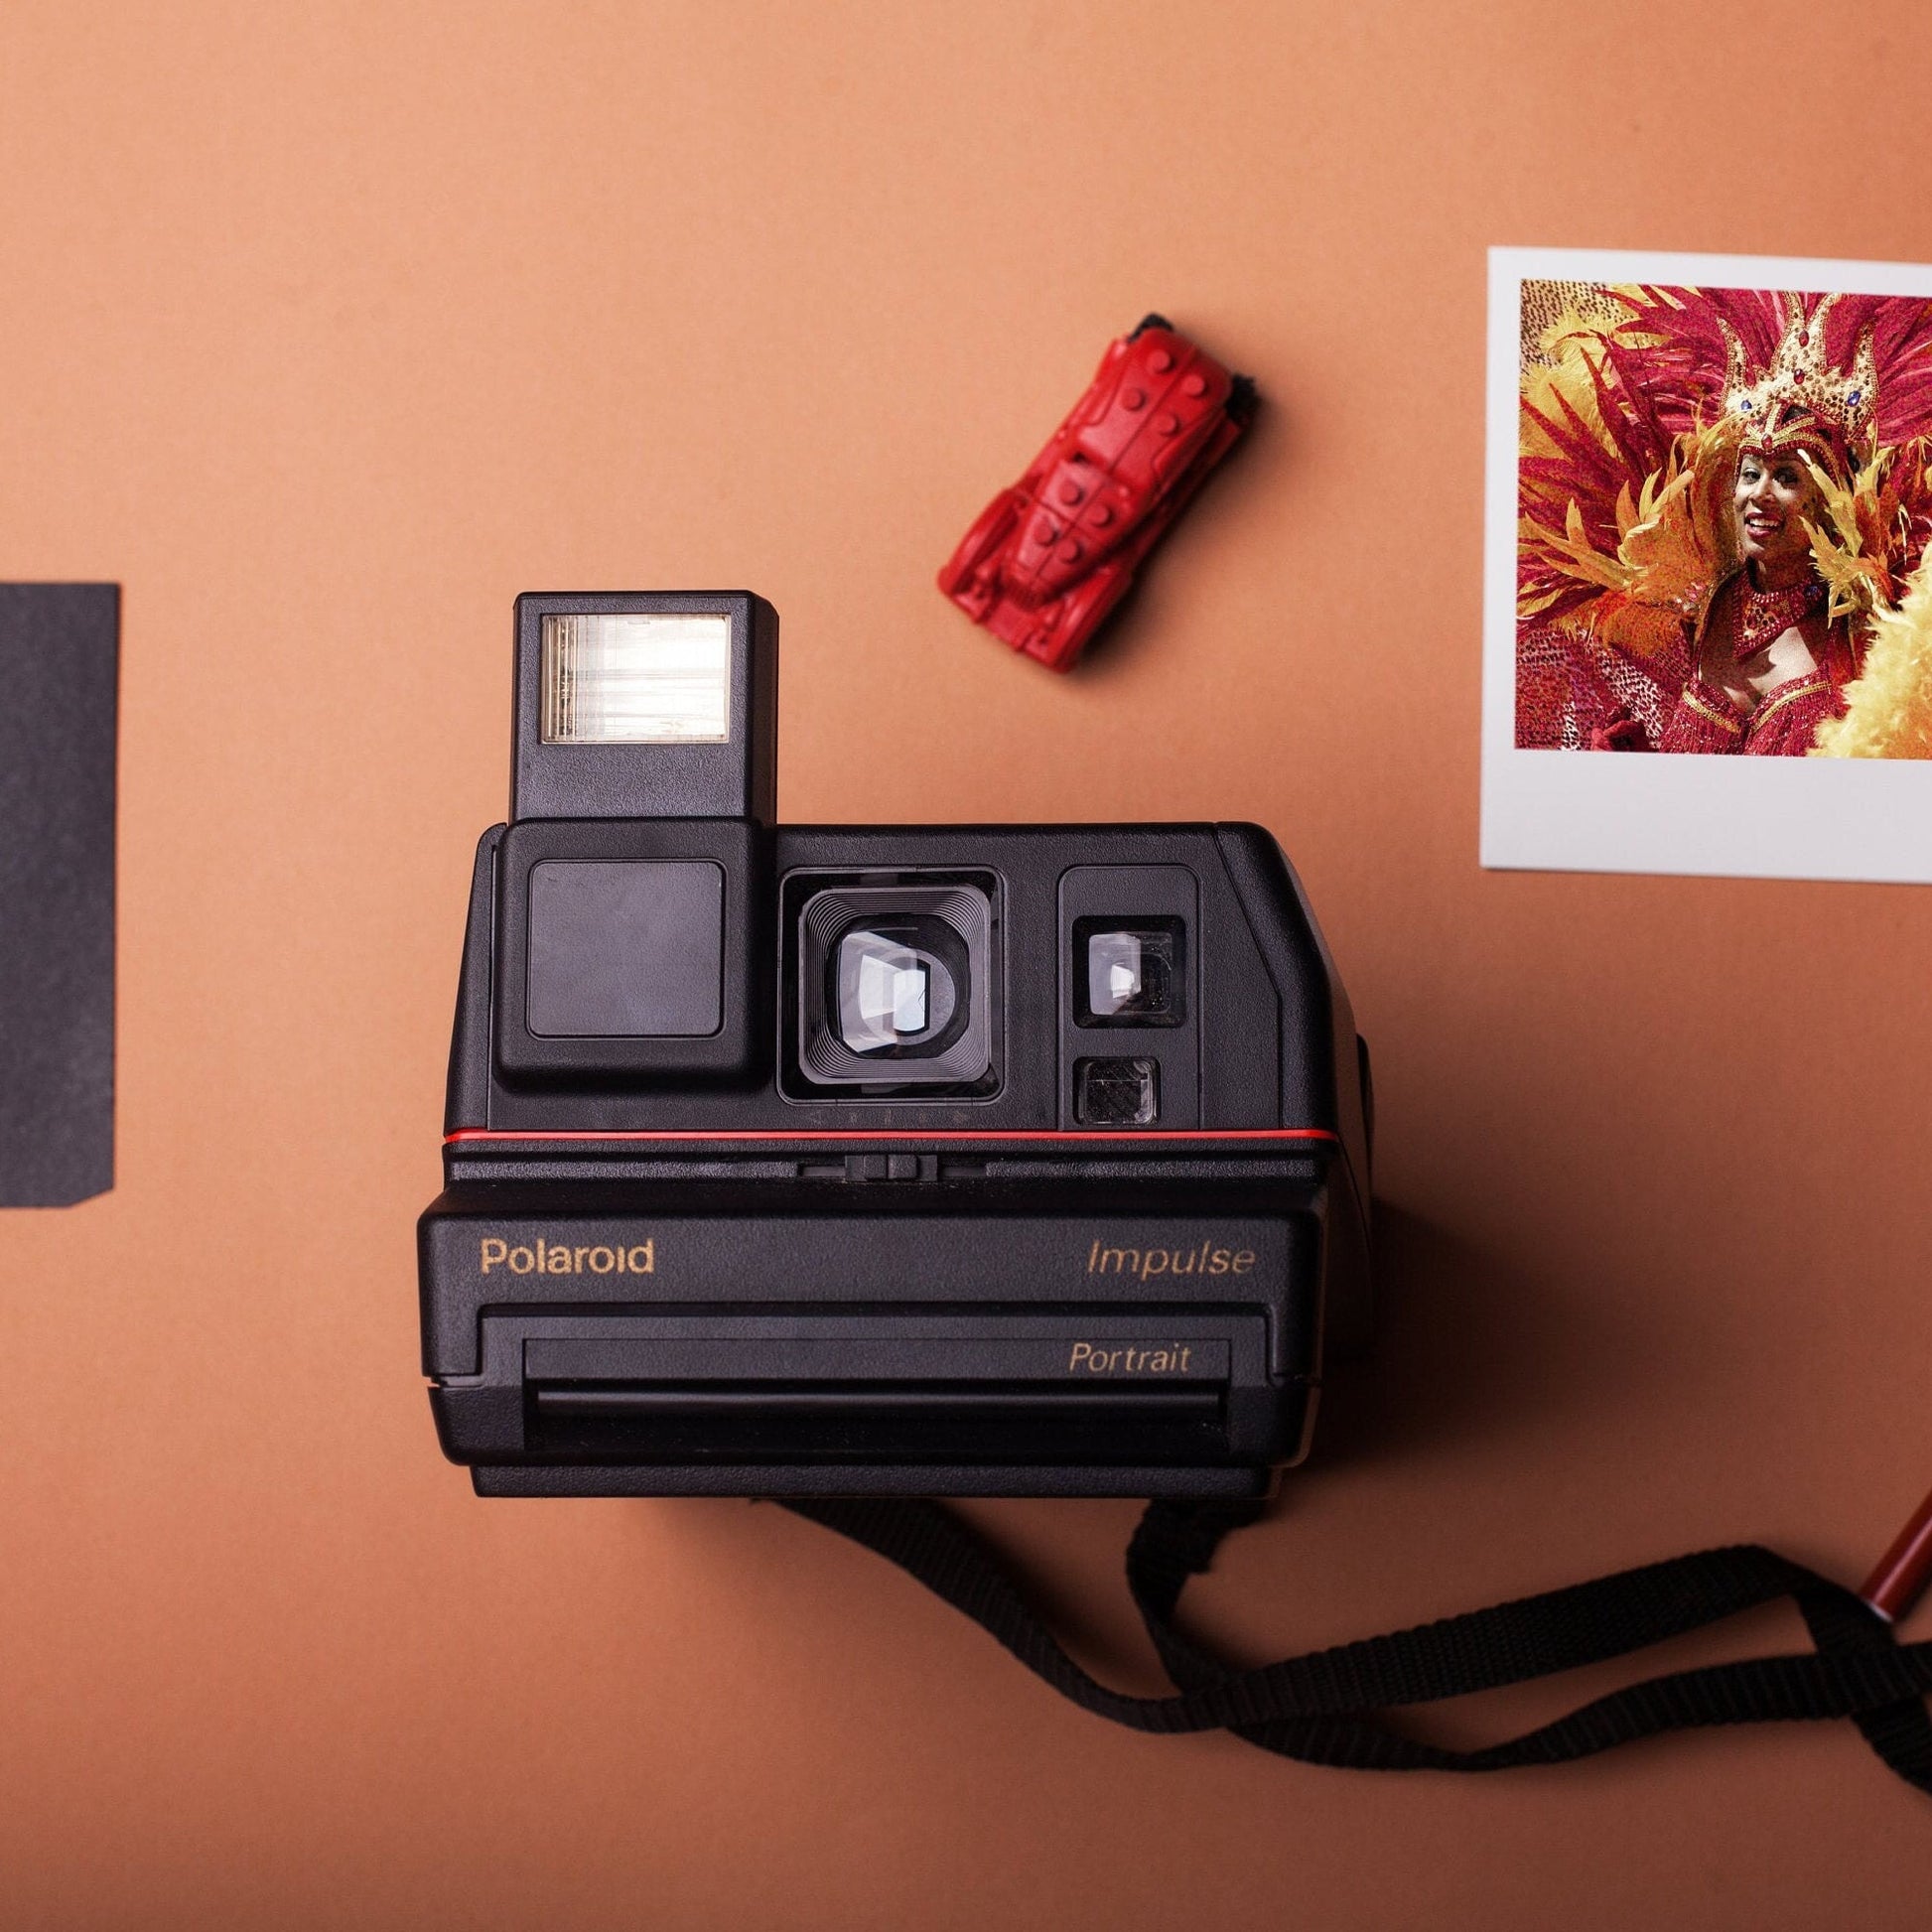 Instant Camera Polaroid Impulse Portait Instant Film Camera